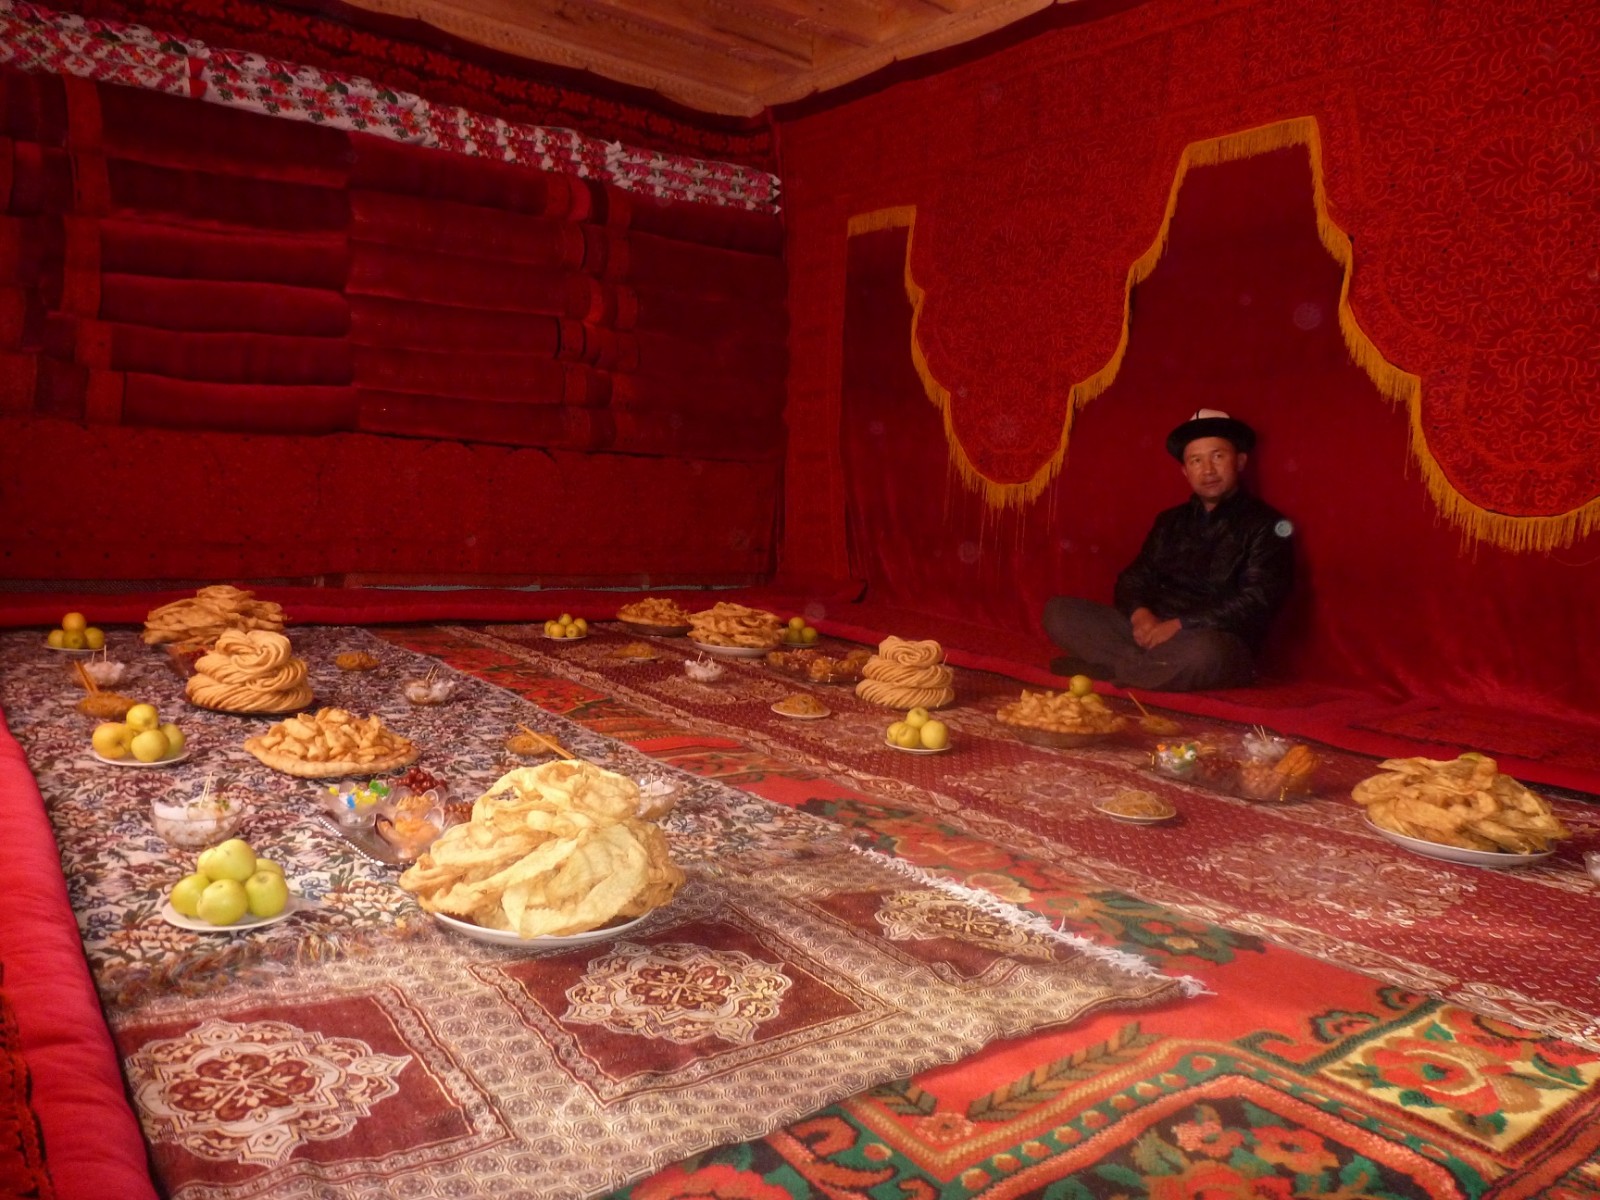 Чолпон Субакожоева: “Кыргыз дөөлөттөрүнө кам көргөн кытай өкмөтүнө ыраазымын”